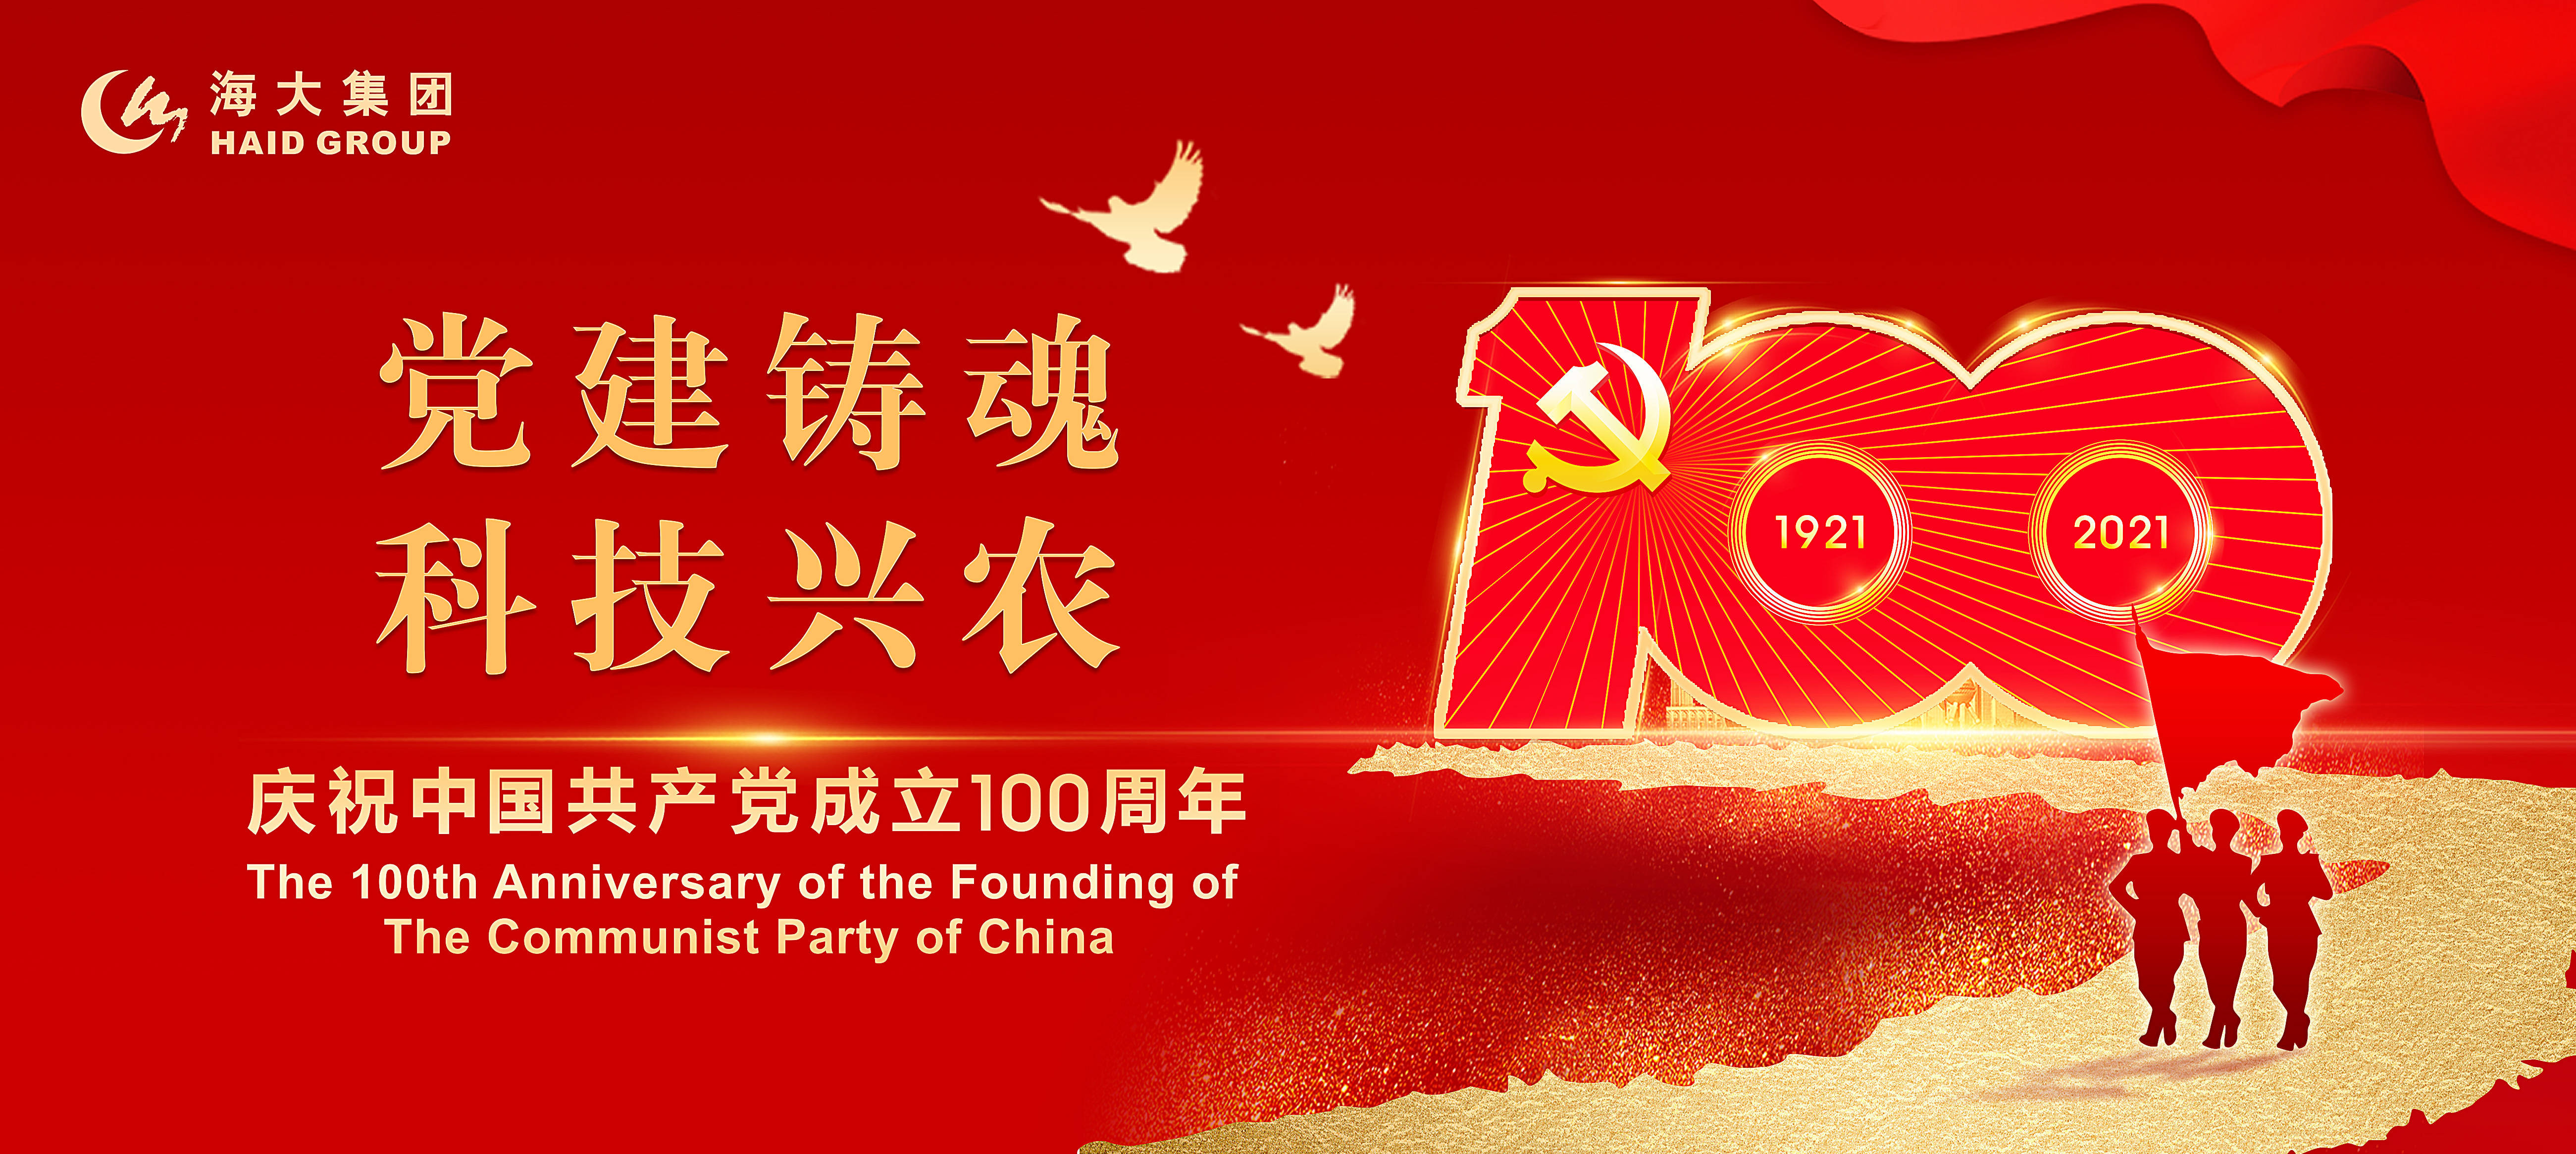 心向党,致百年 ——热烈庆祝中国共产党成立100周年